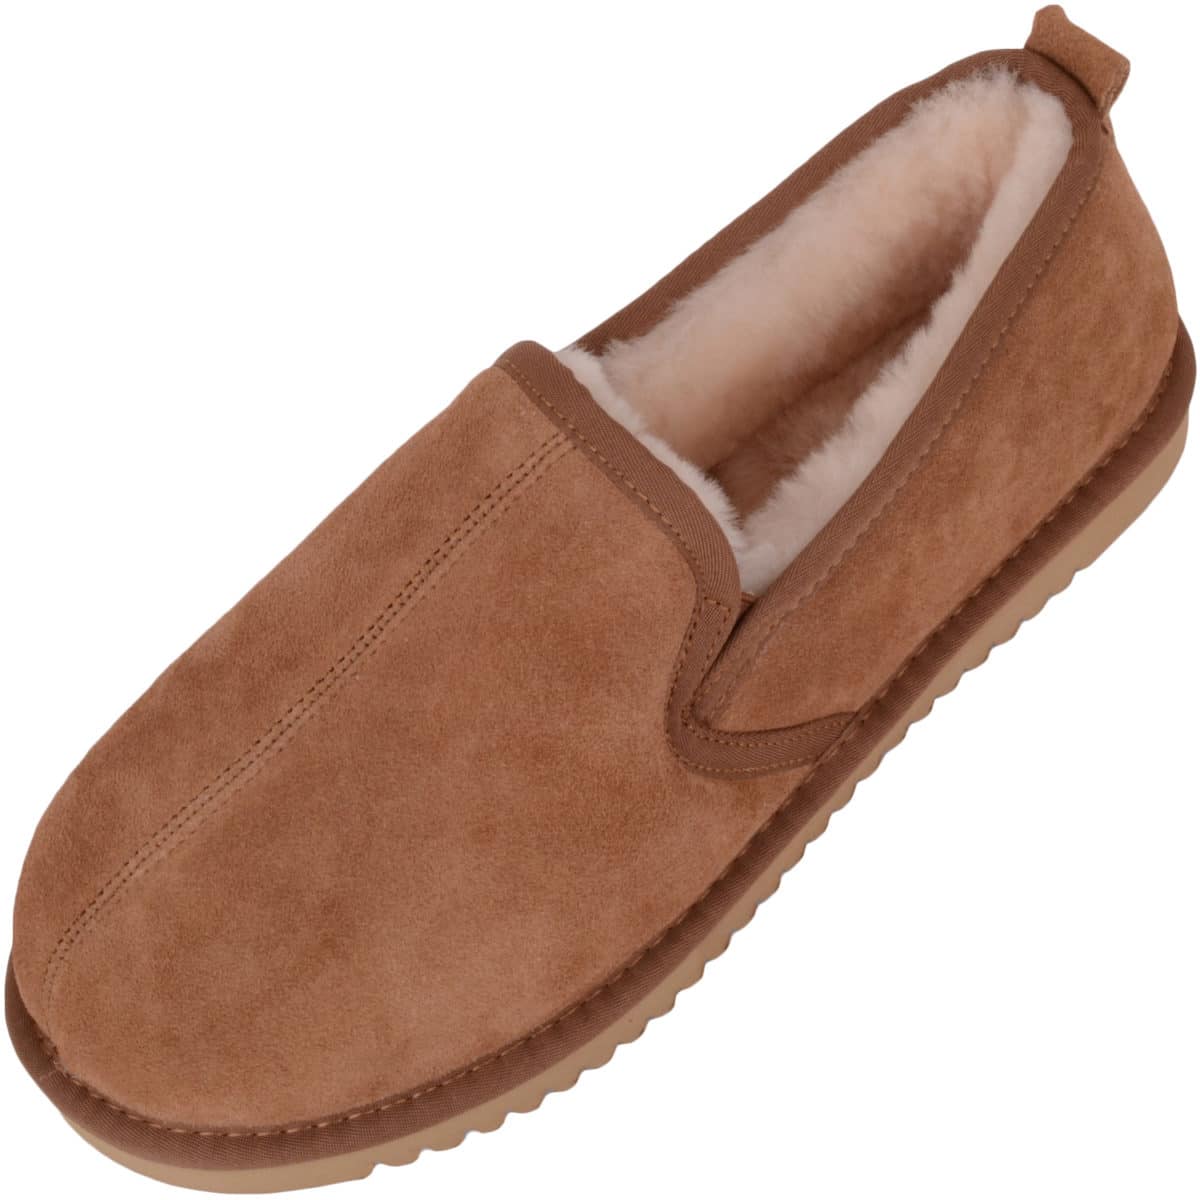 buy mens slippers uk